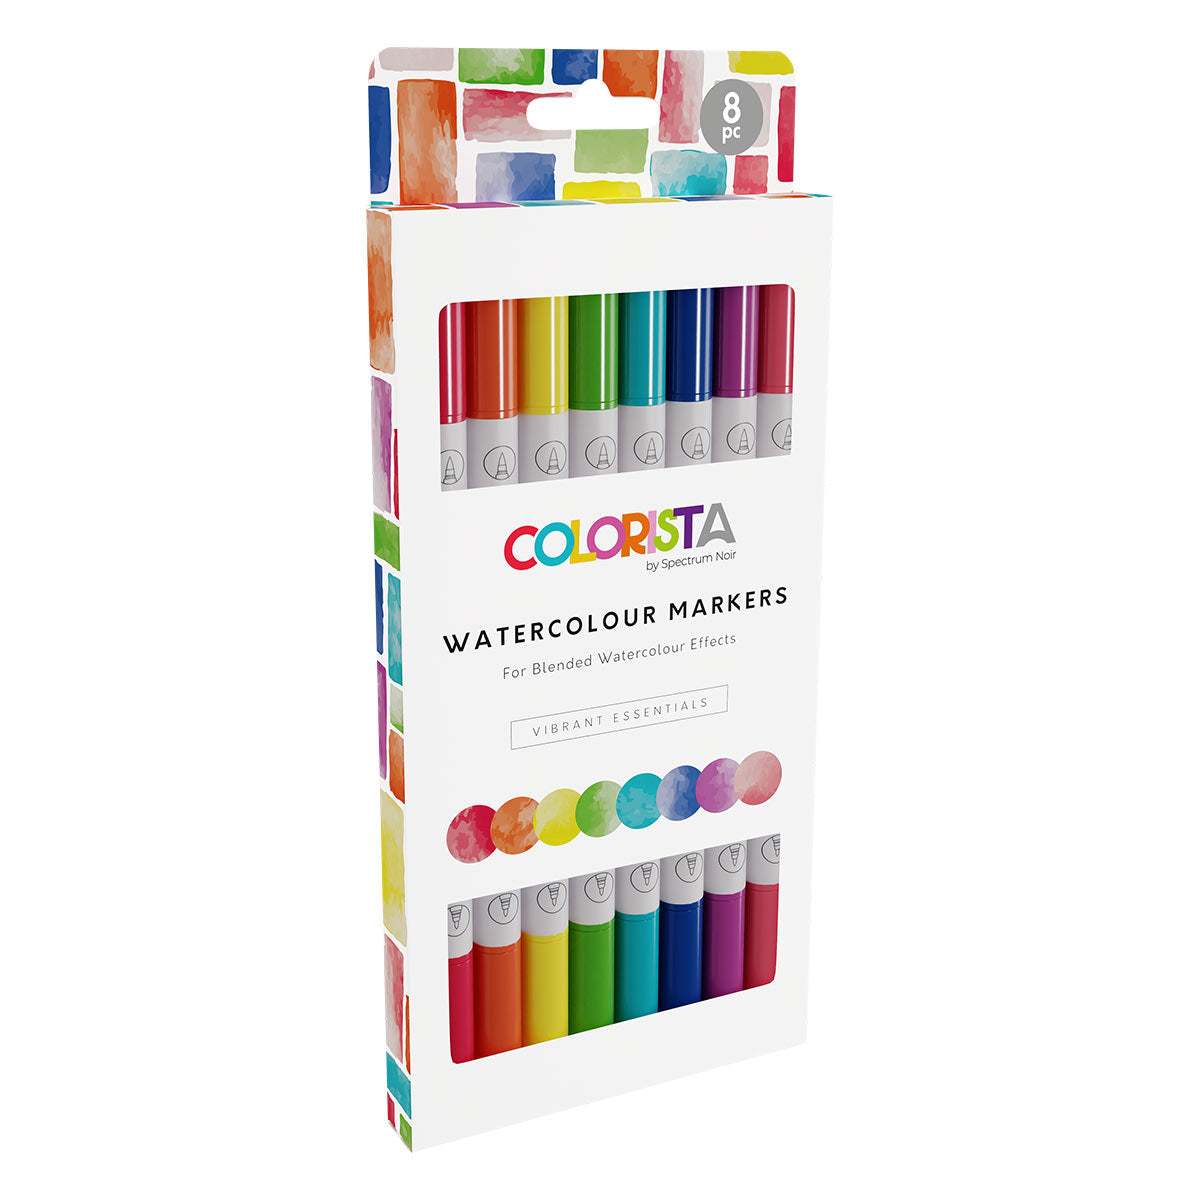 Spectrum Noir Colorista - Marcatori ad acquerello (8 set) Essentials vibrante